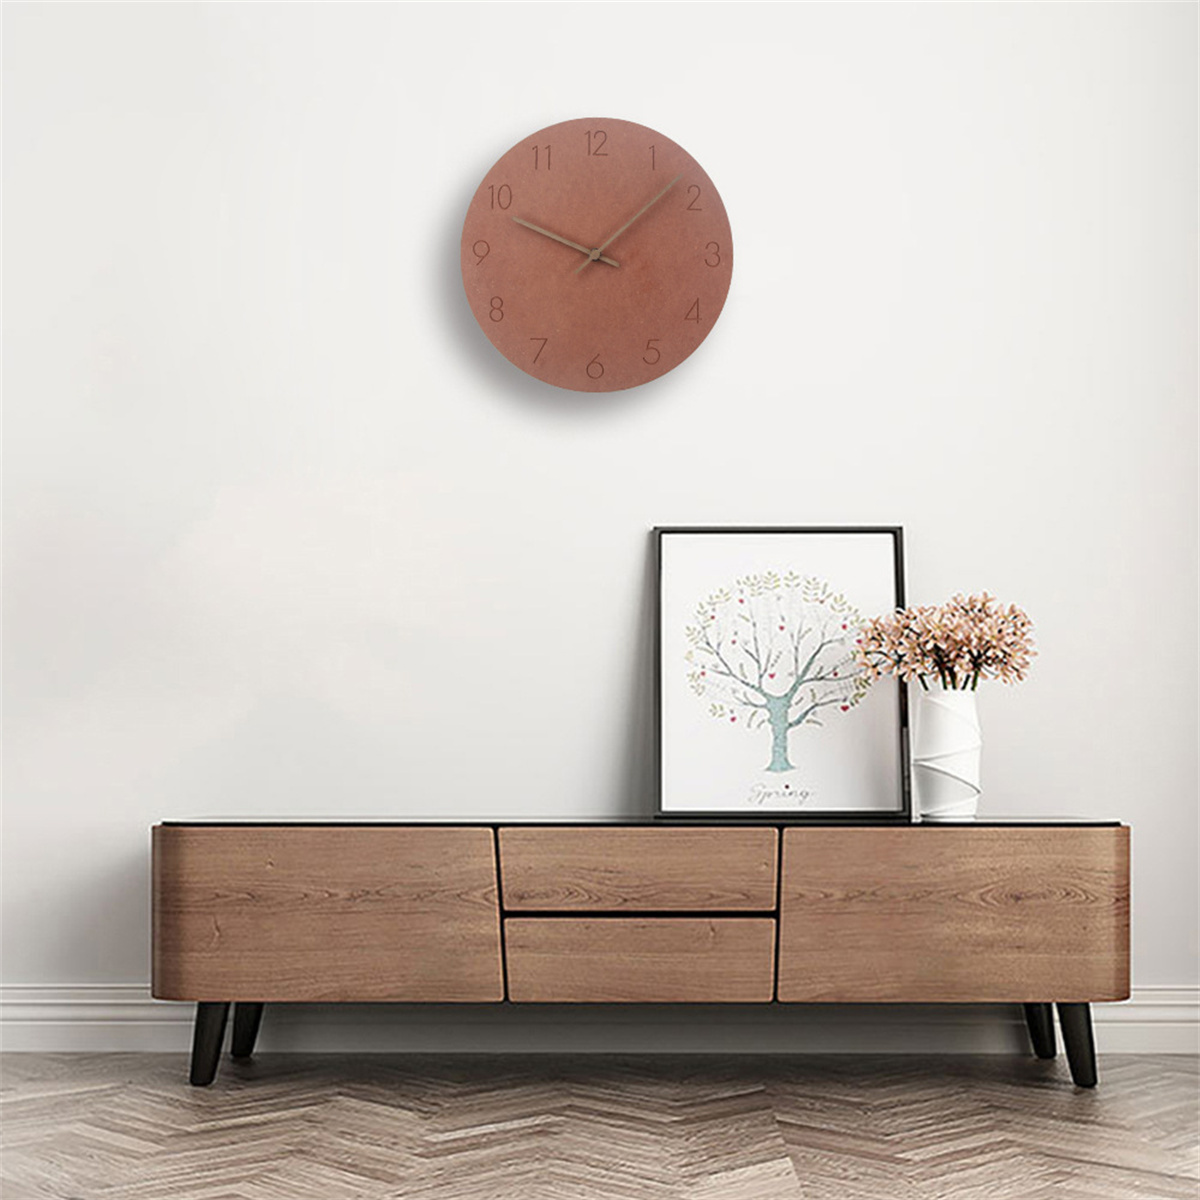 SYNTEK Uhr minimalistische Wanduhr Holz Wohnzimmer stumm Wanduhr hängen kreativ Uhren braun aus